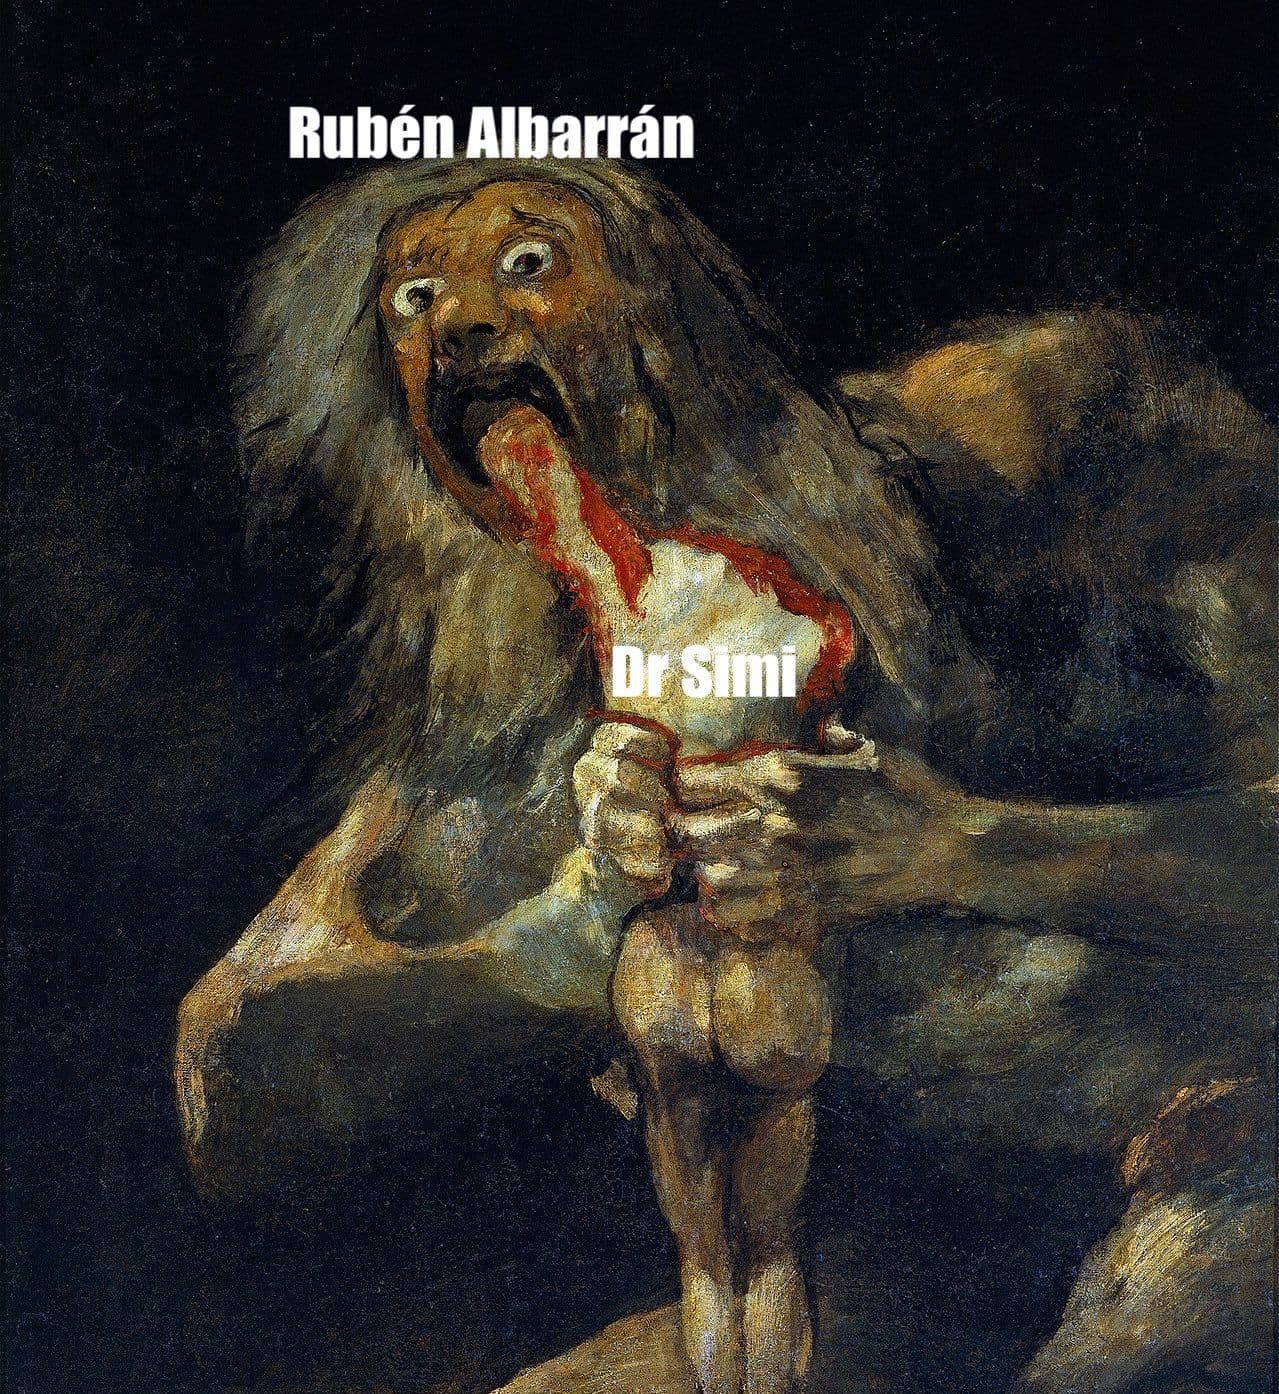 Memes de Rubén Albarran vs Dr. Simi